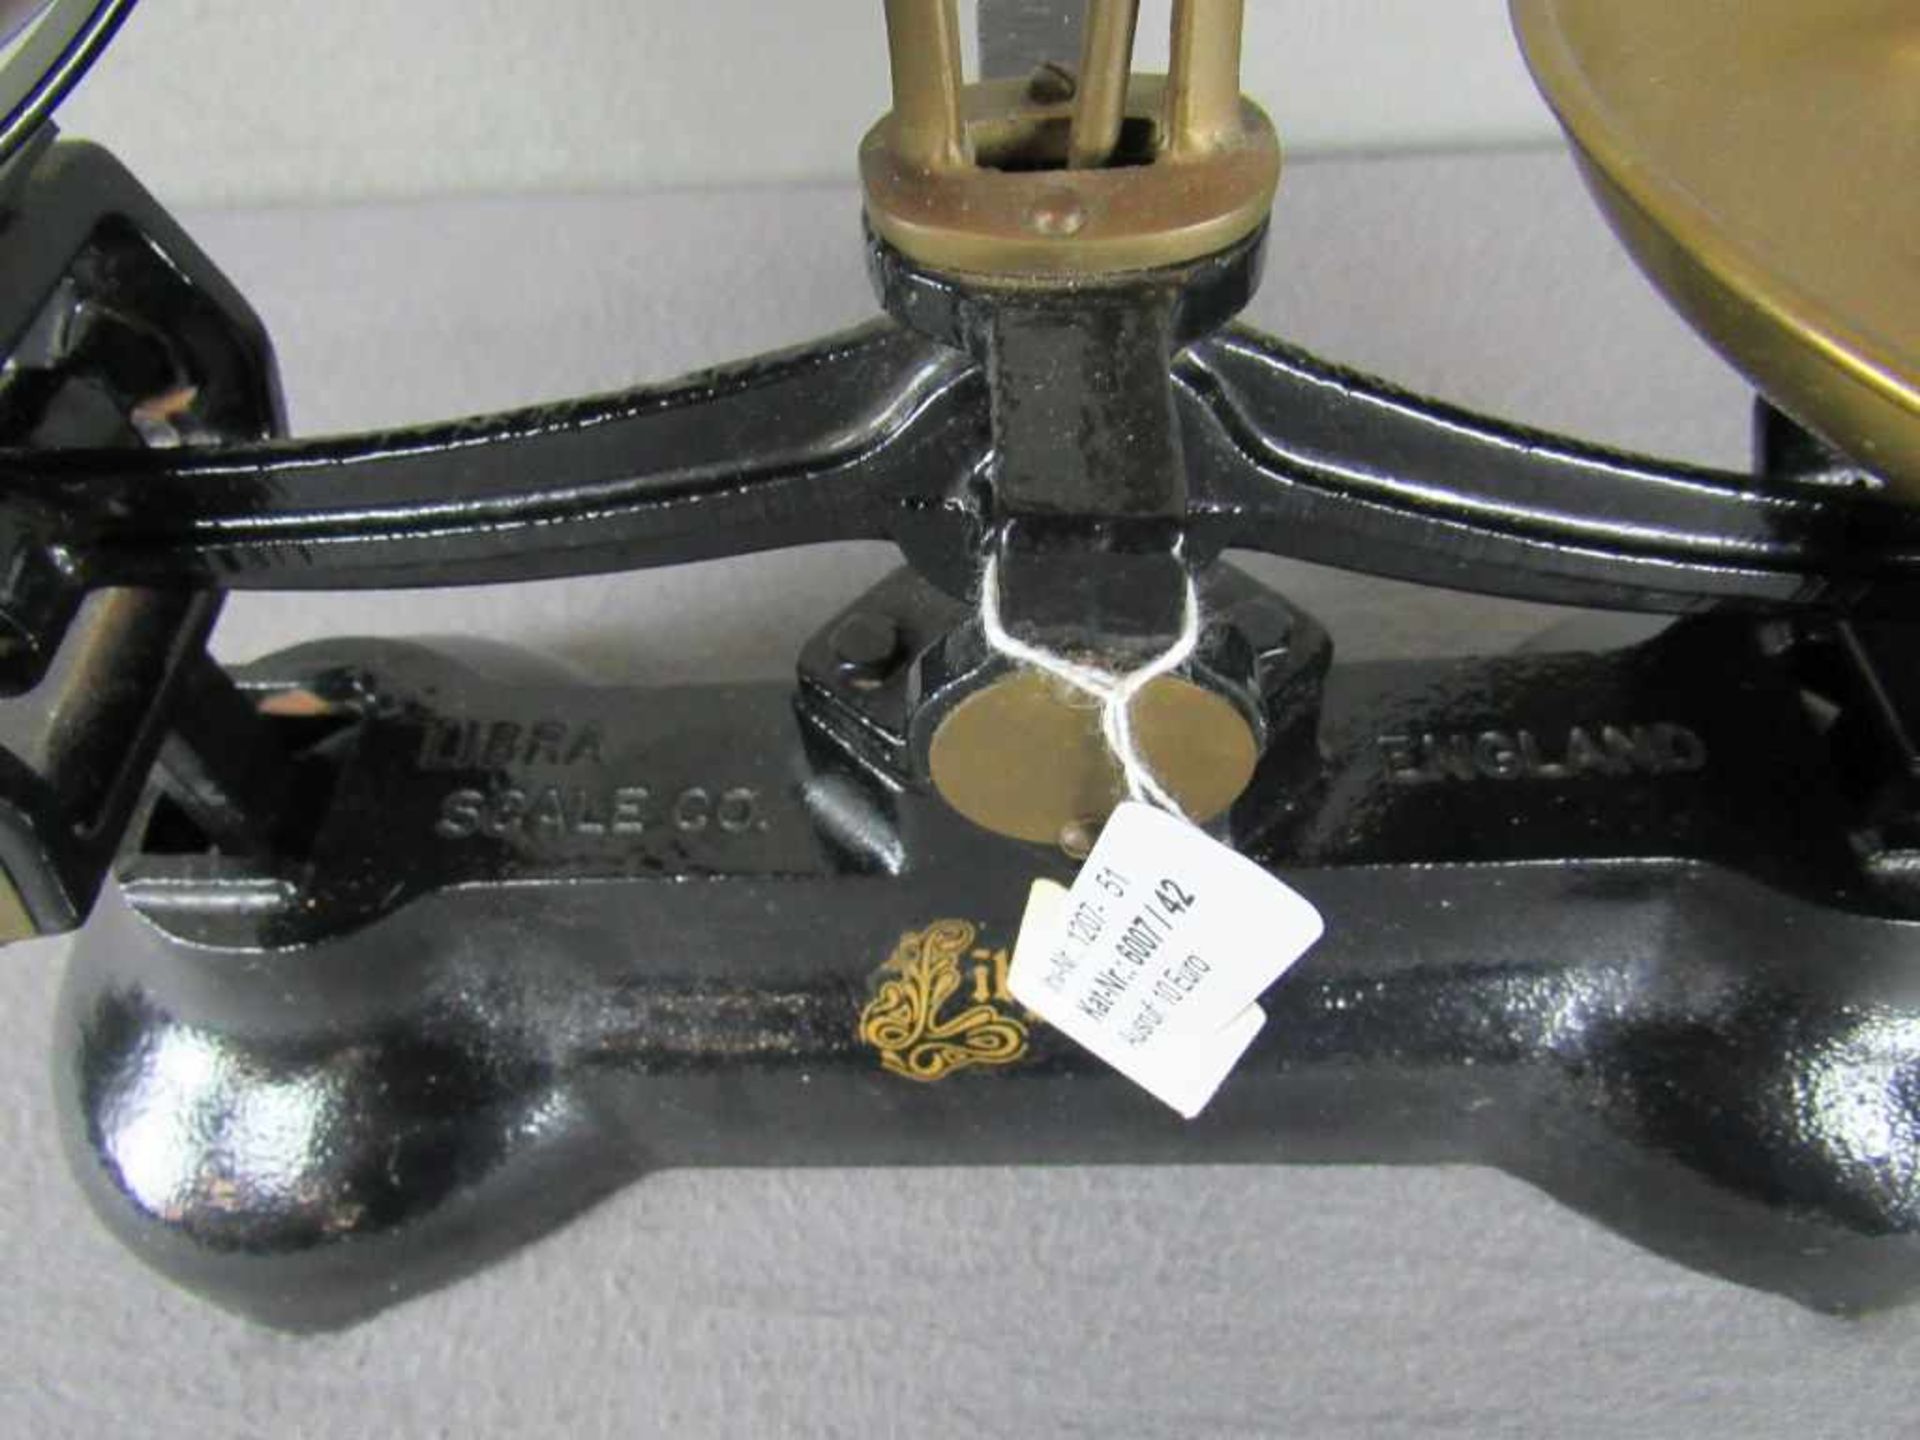 Tischwaage um 1900 England 41cm breit- - -20.00 % buyer's premium on the hammer price19.00 % VAT - Bild 3 aus 6